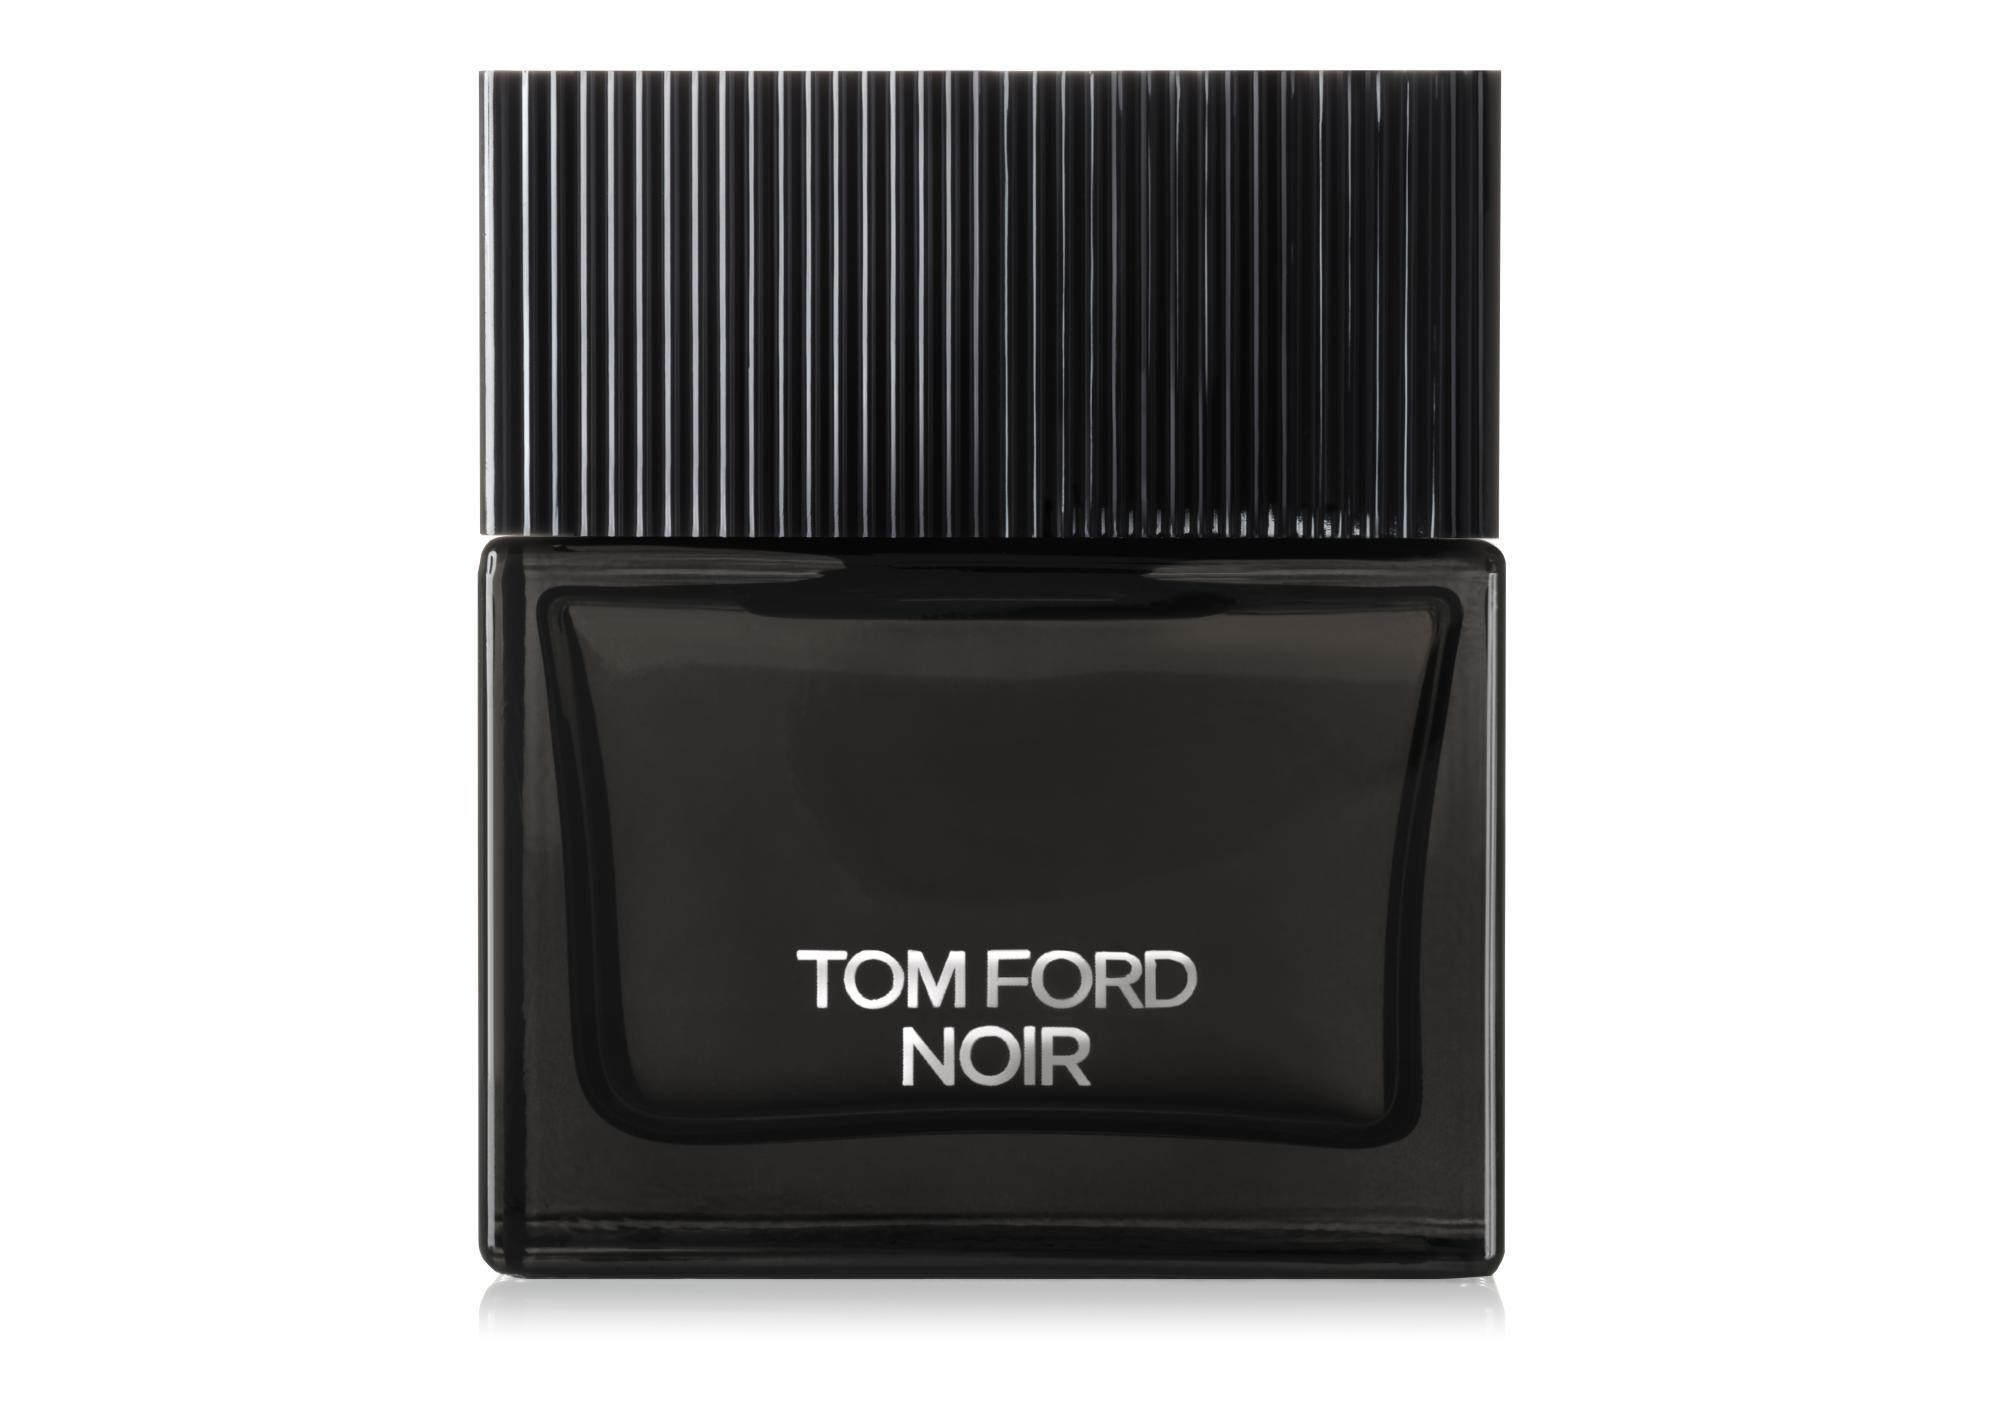 TOM FORD Noir eau de parfum 50ml